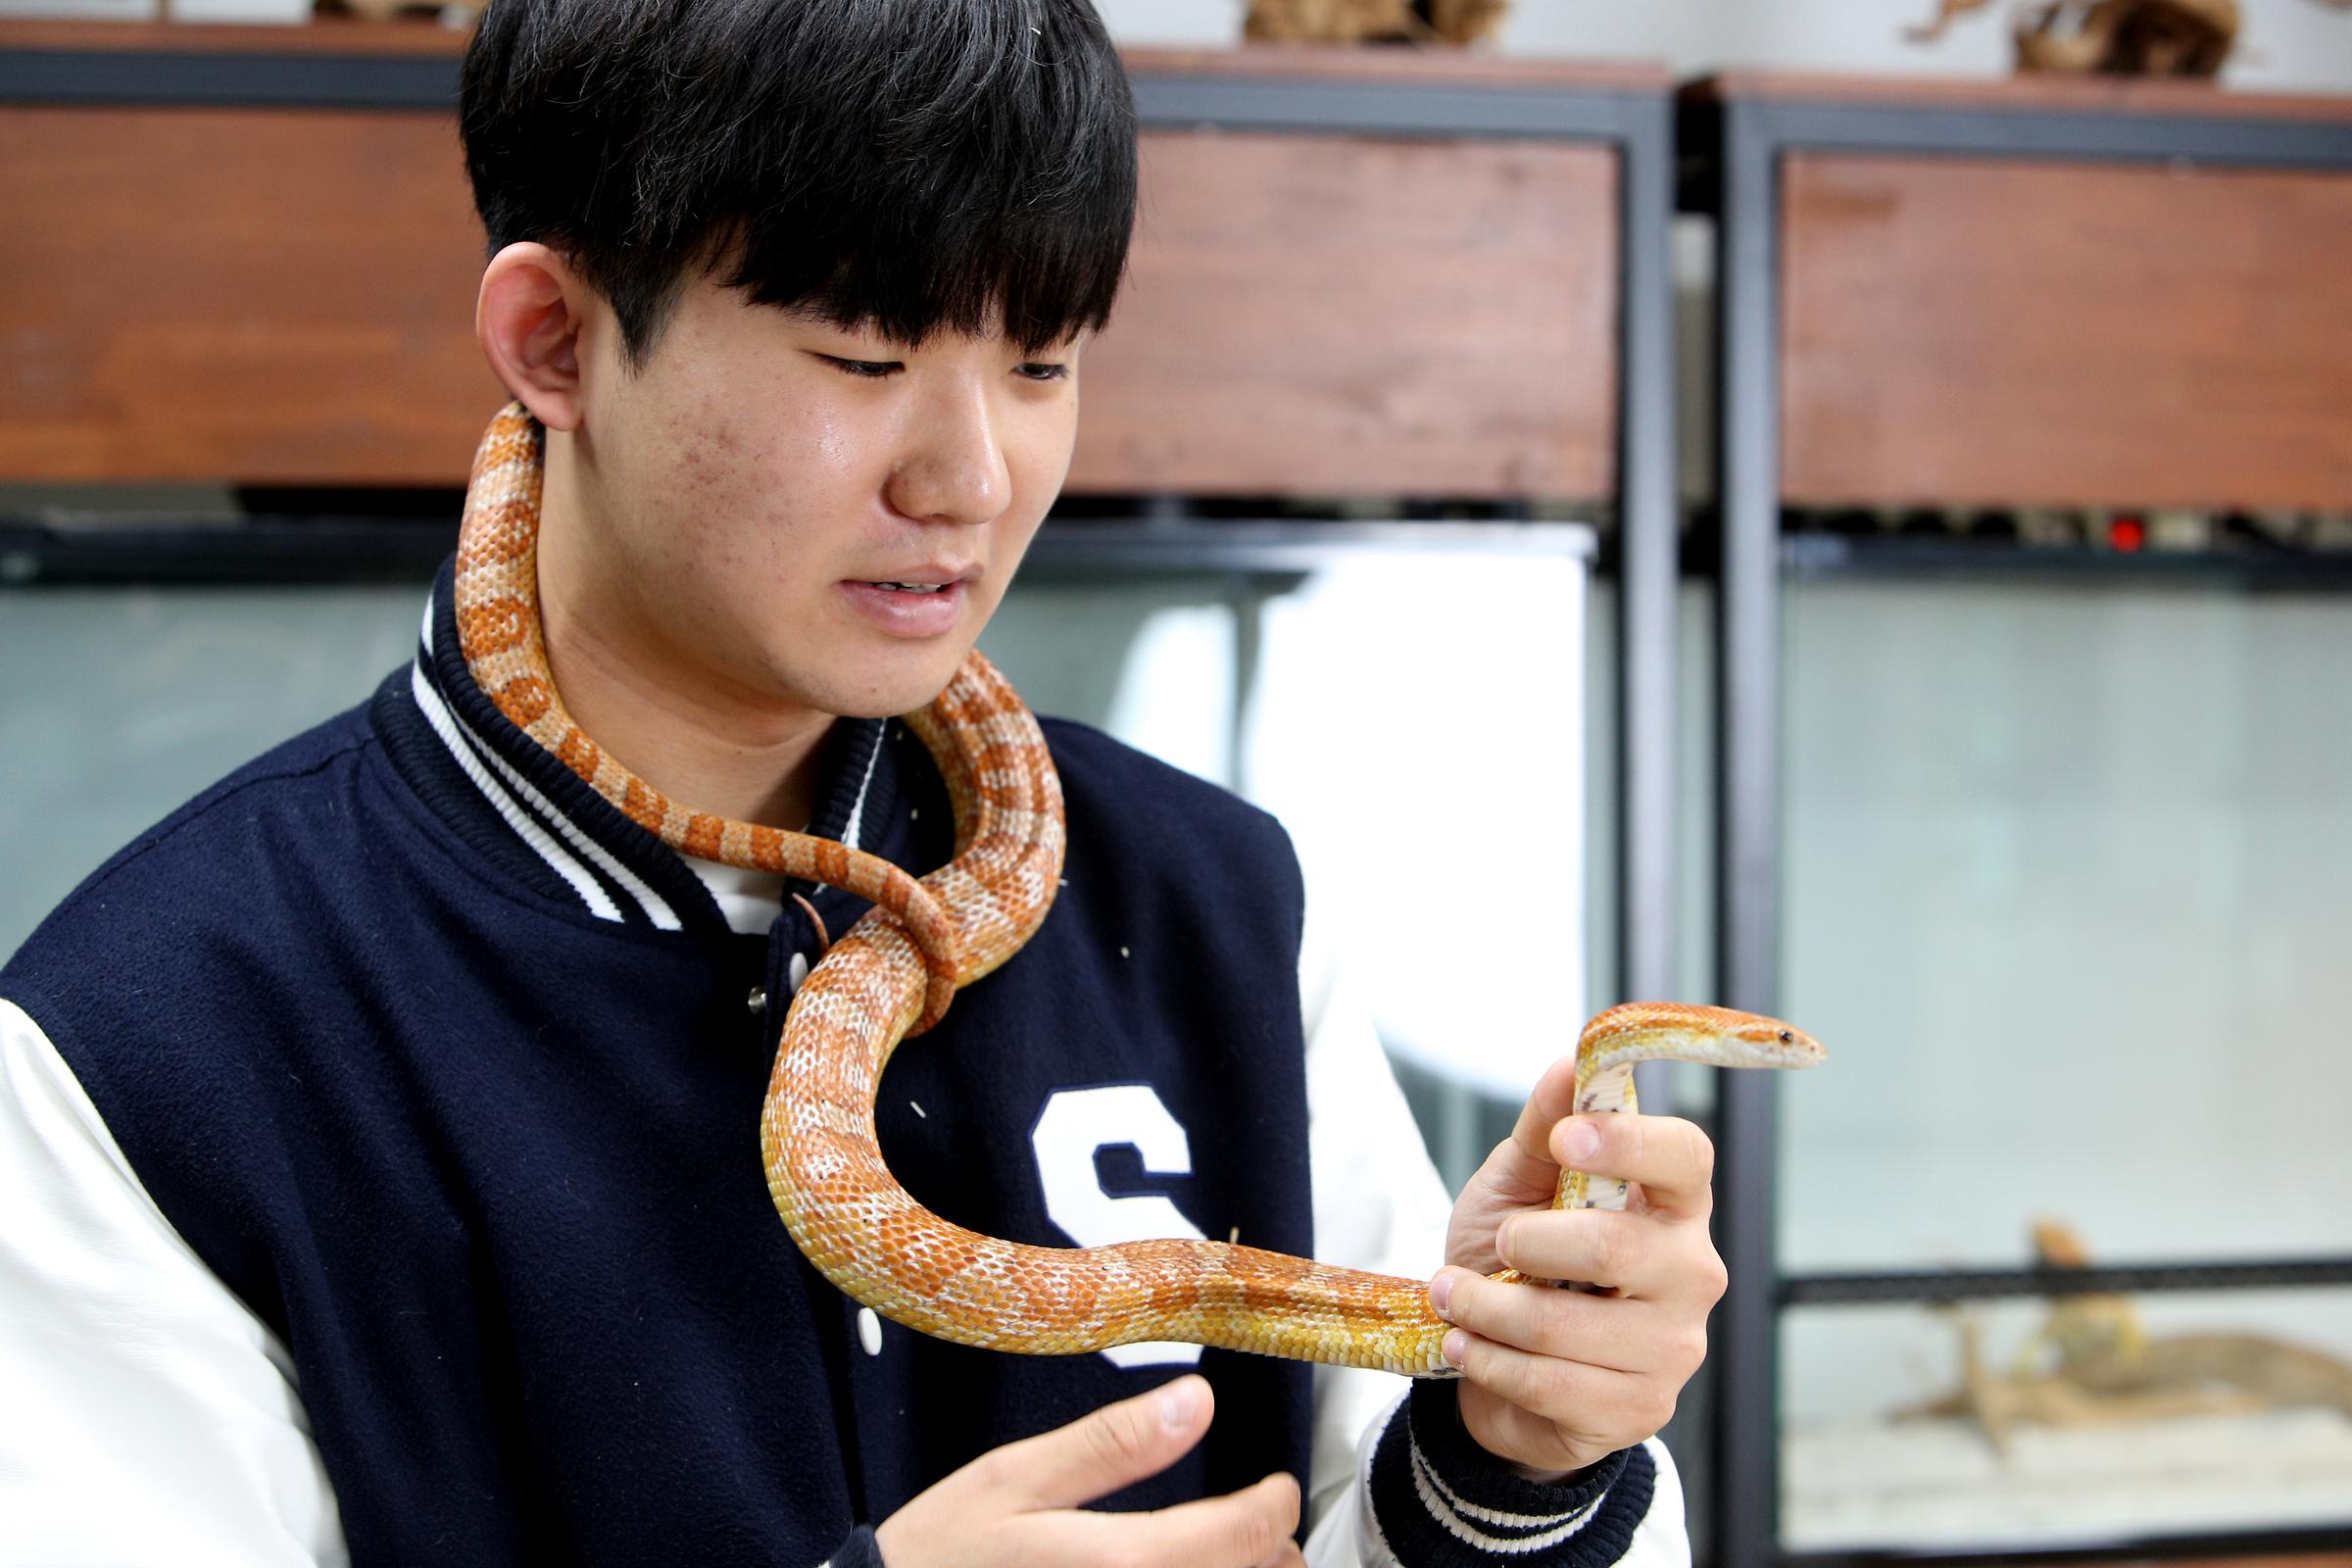 뱀을 목에 두르고 있는 남학생의 사진